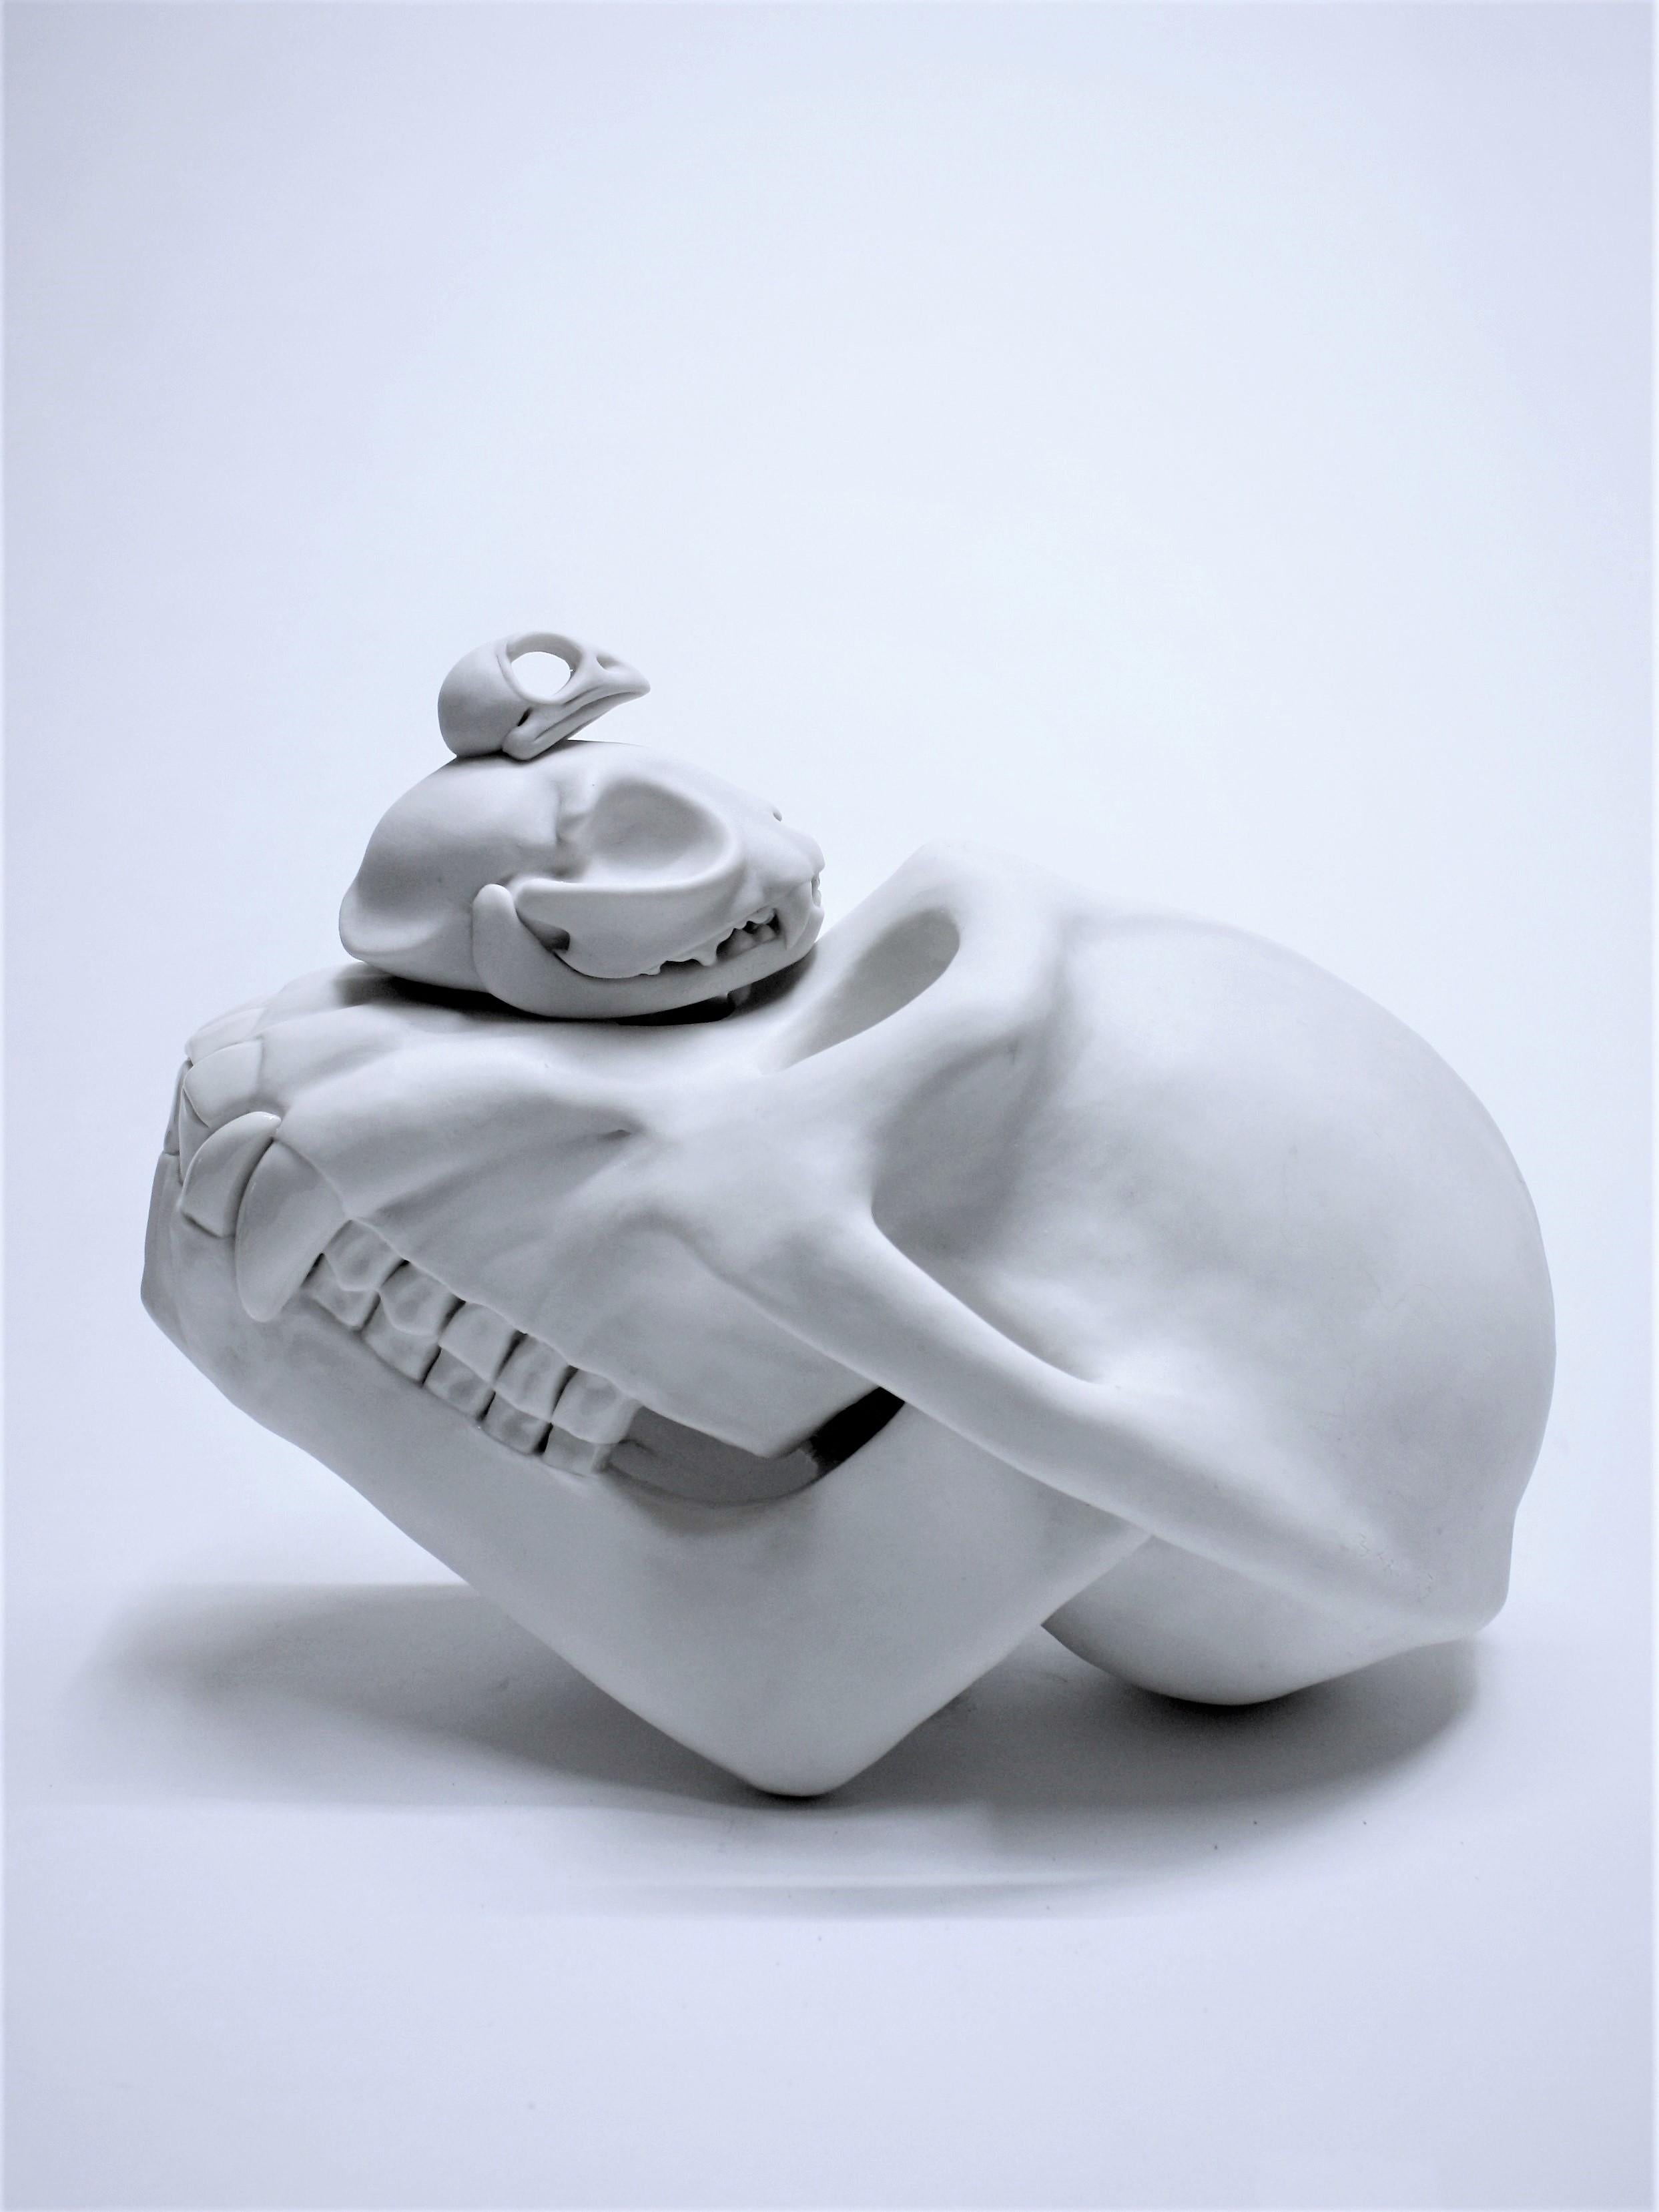 Una escultura original de porcelana hecha a mano por la artista conceptual contemporánea estadounidense Bethany Krull.

Esta obra titulada Pila de Extinción es un excelente ejemplo del comentario del artista sobre la frágil relación del ser humano